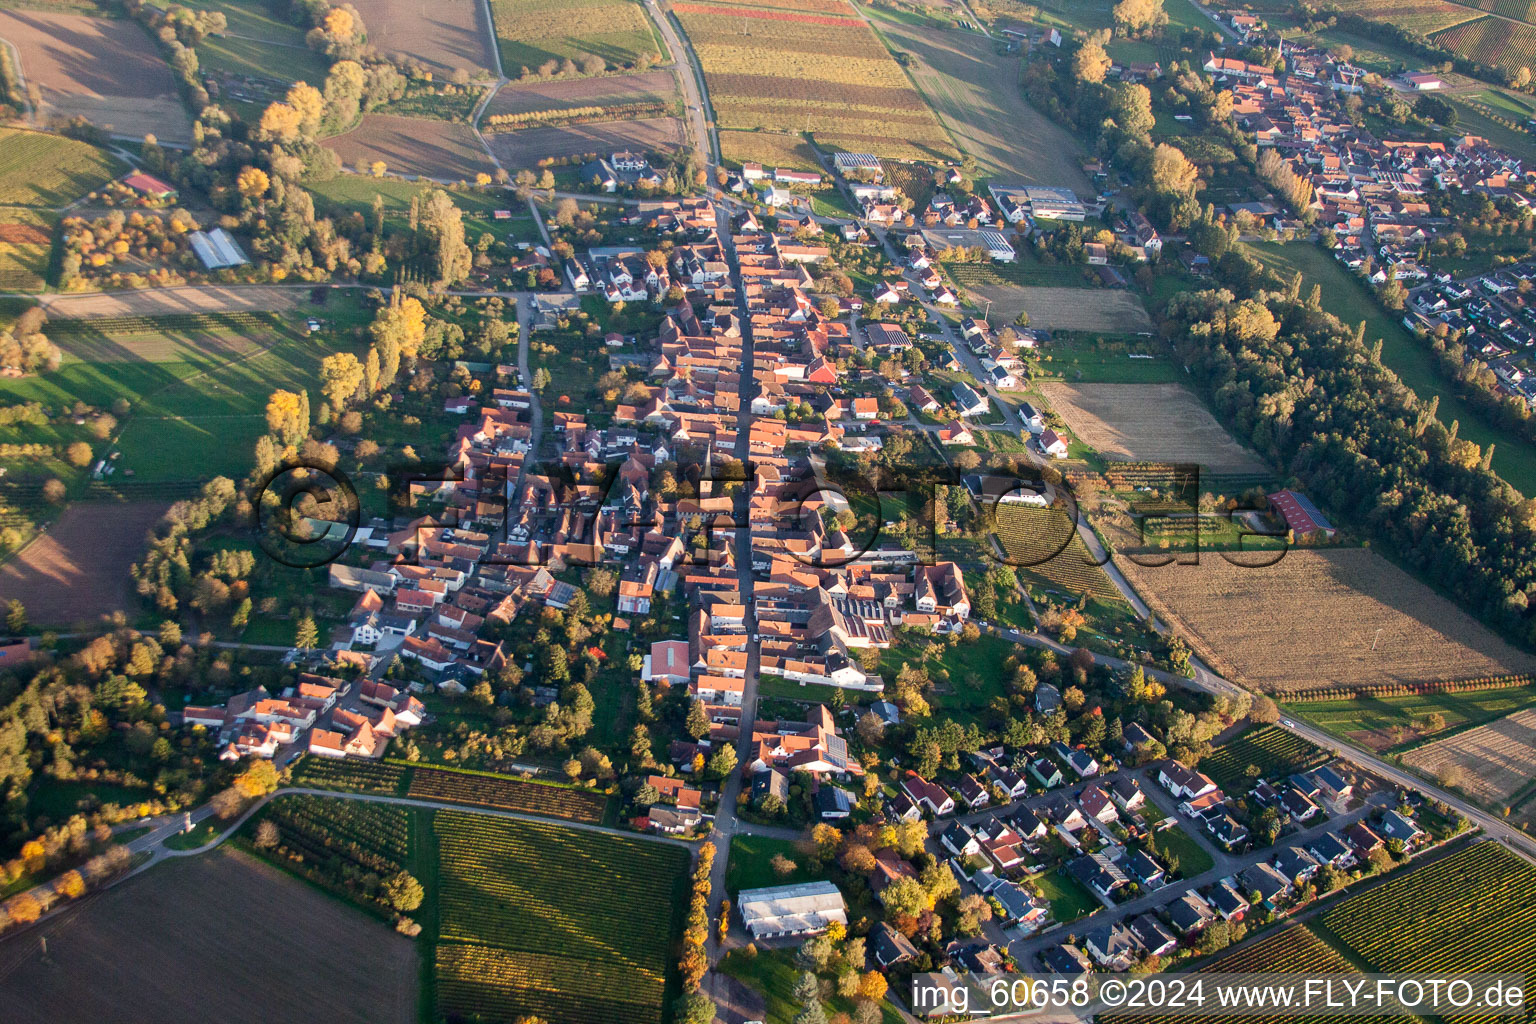 Luftbild von Dorf - Ansicht am Rande von landwirtschaftlichen Feldern und Nutzflächen im Ortsteil Heuchelheim in Heuchelheim-Klingen im Bundesland Rheinland-Pfalz, Deutschland